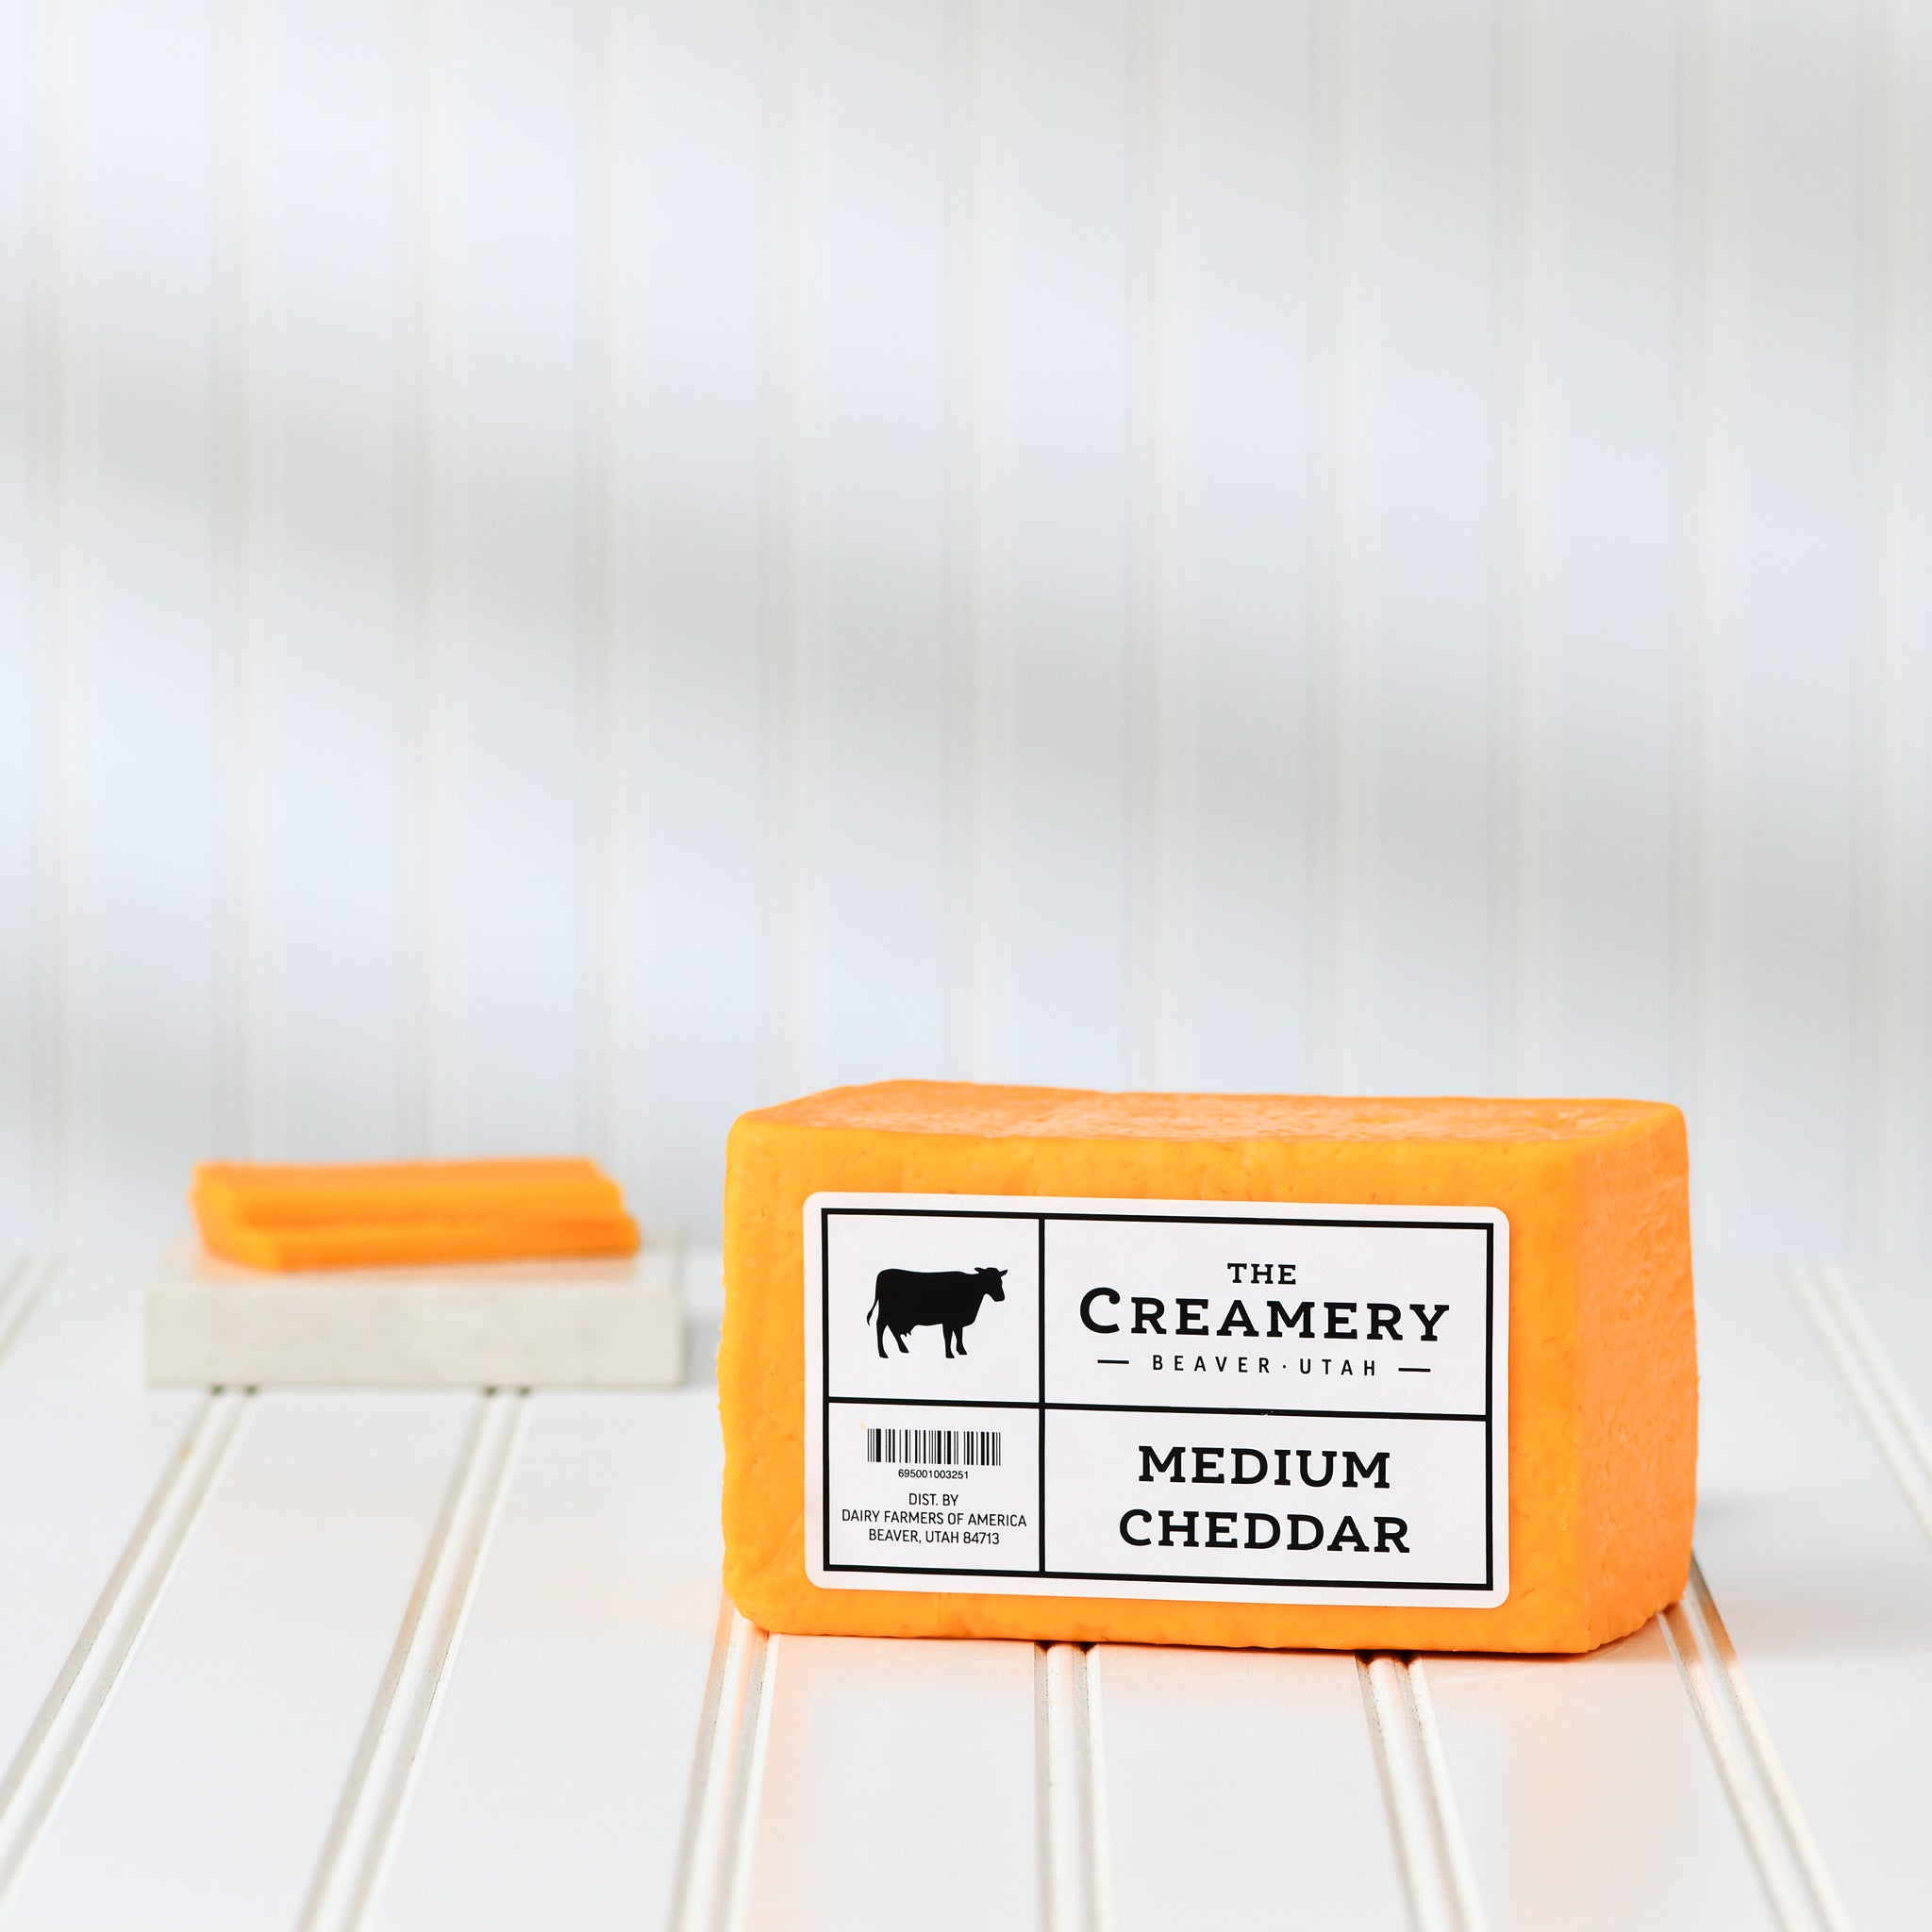 The Creamery Medium Cheddar Cheese